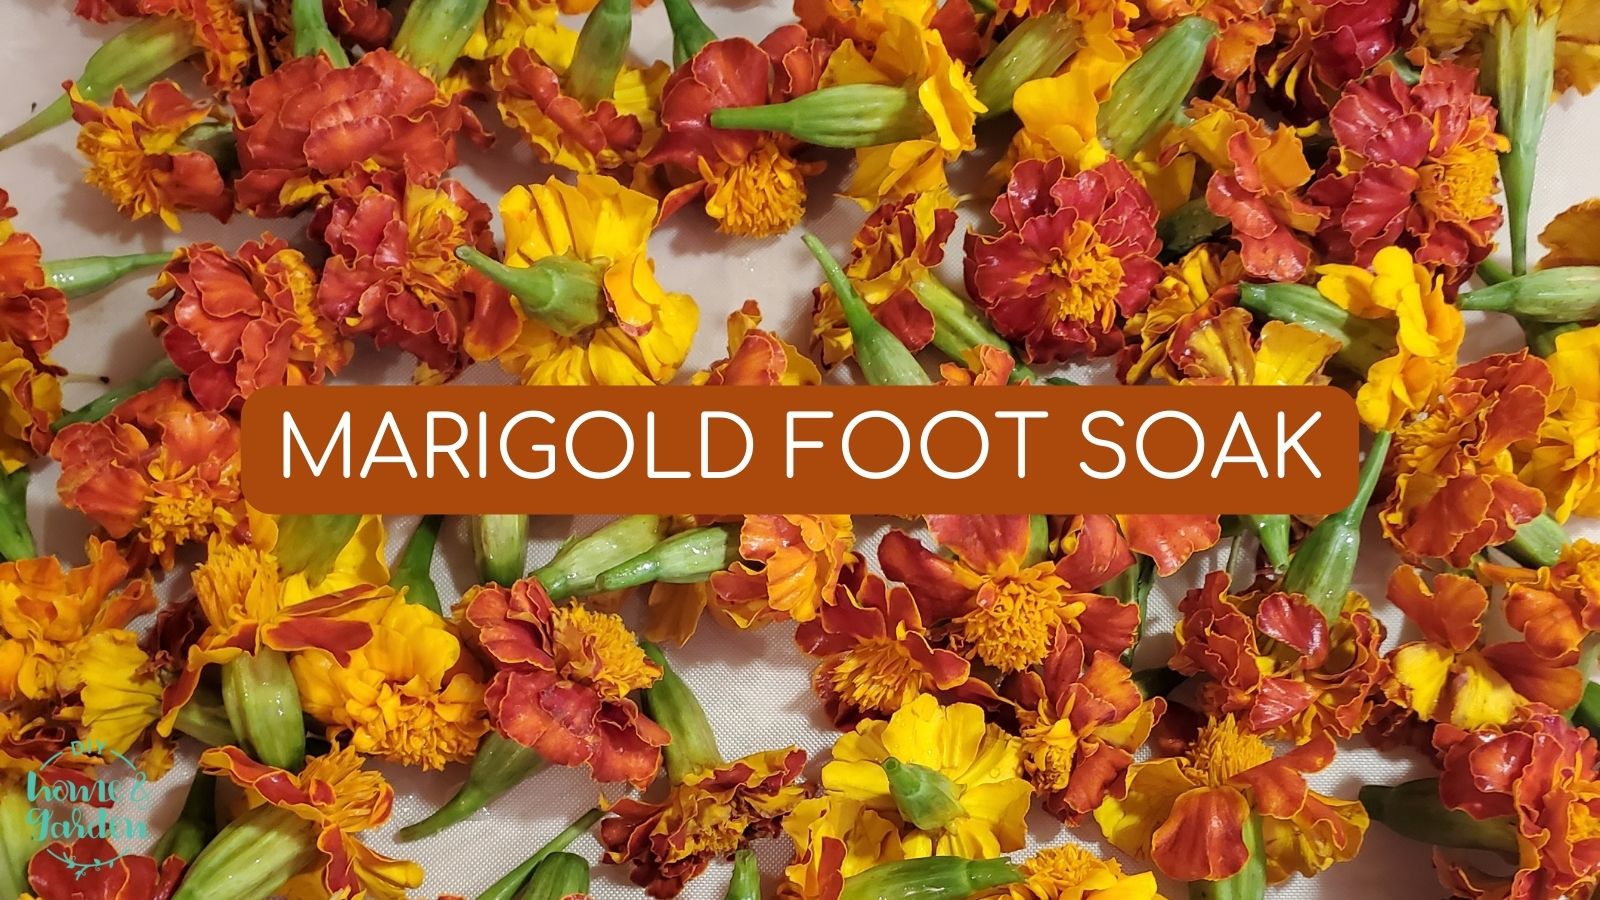 Marigold Foot Soak: Relax and Restore Foot Health